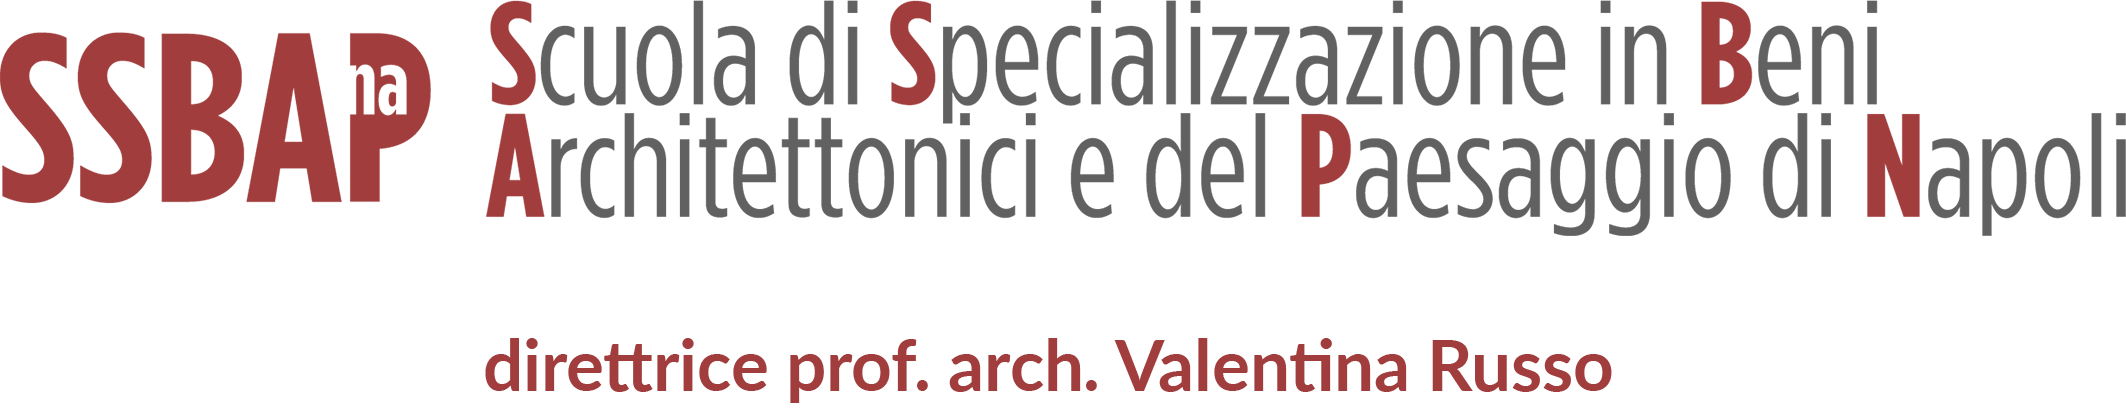 Scuola di Specializzazione in Beni architettonici e del Paesaggio Logo